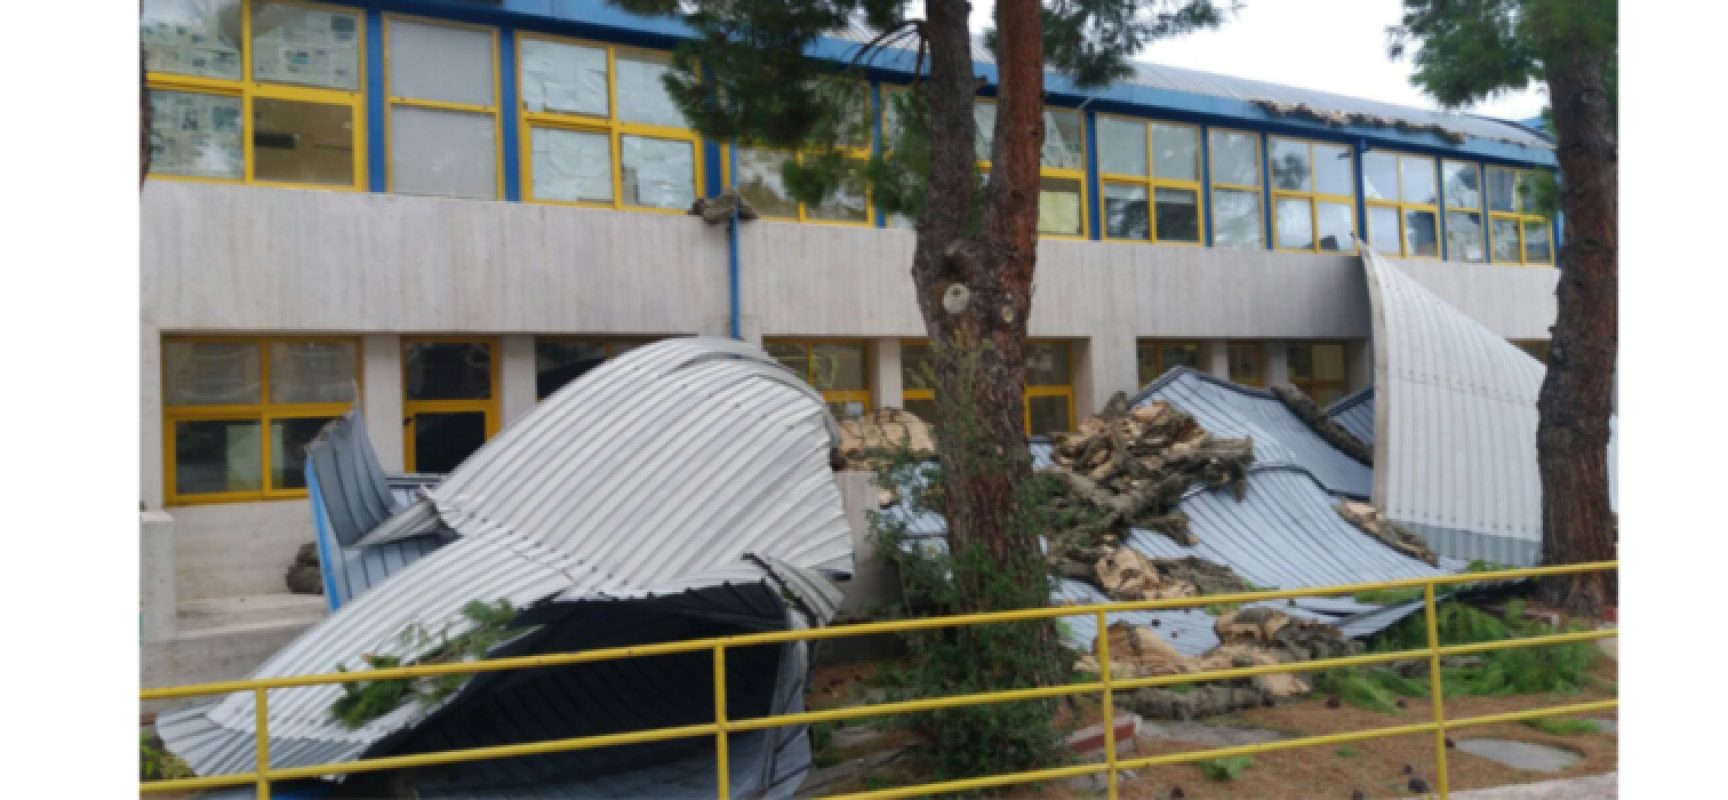 Forte vento: tetto divelto all’istituto scolastico “Dell’Olio”, lezioni sospese